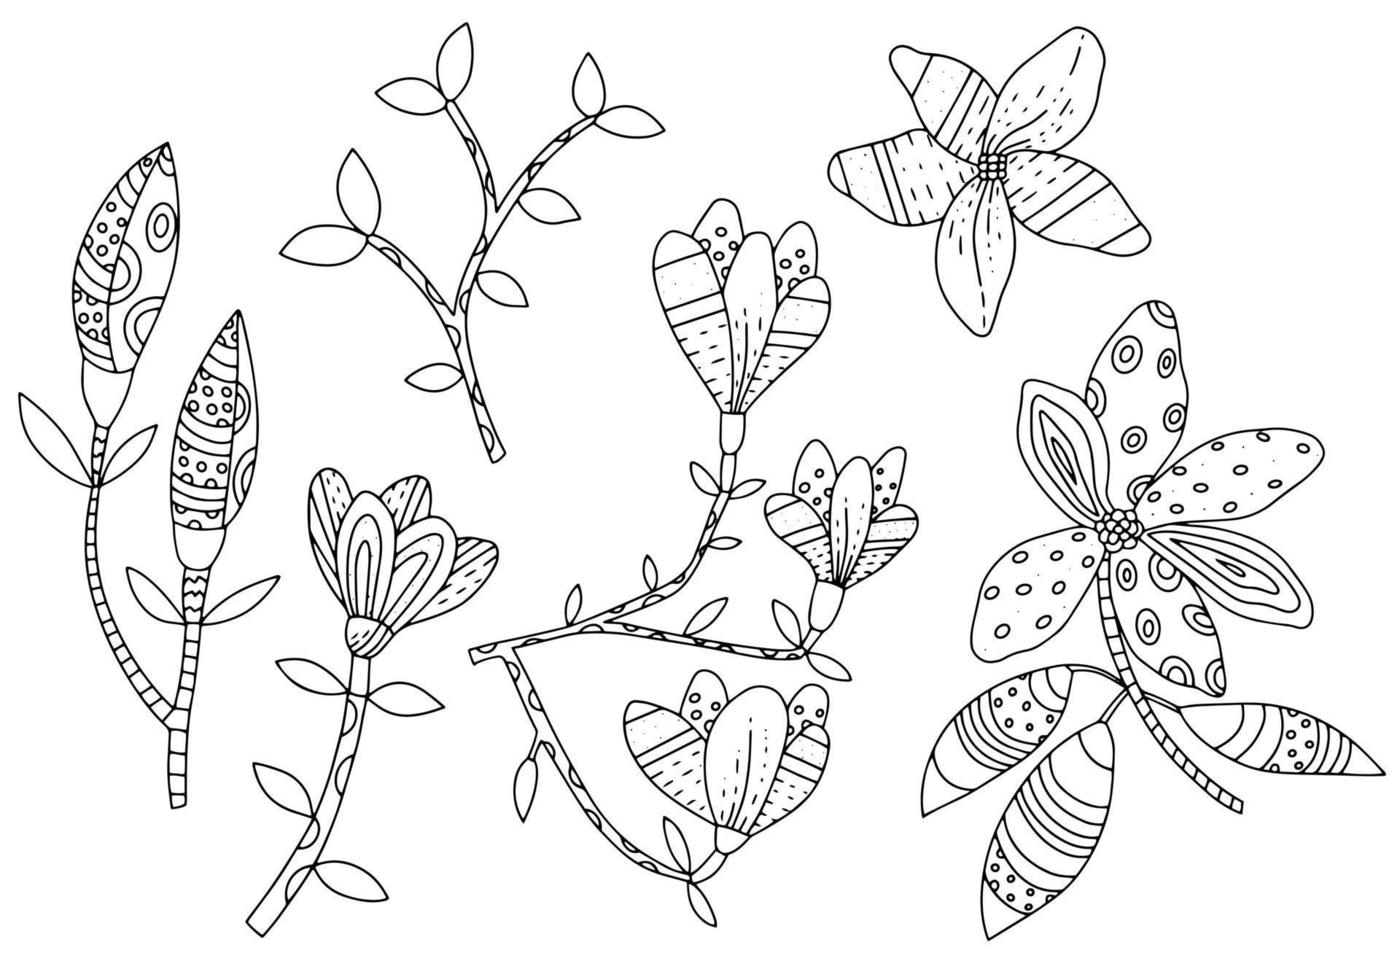 flores de magnólia em galhos com folhas. conjunto de elementos gráficos botânicos em estilo étnico. plantas estilizadas desenhadas à mão vetor